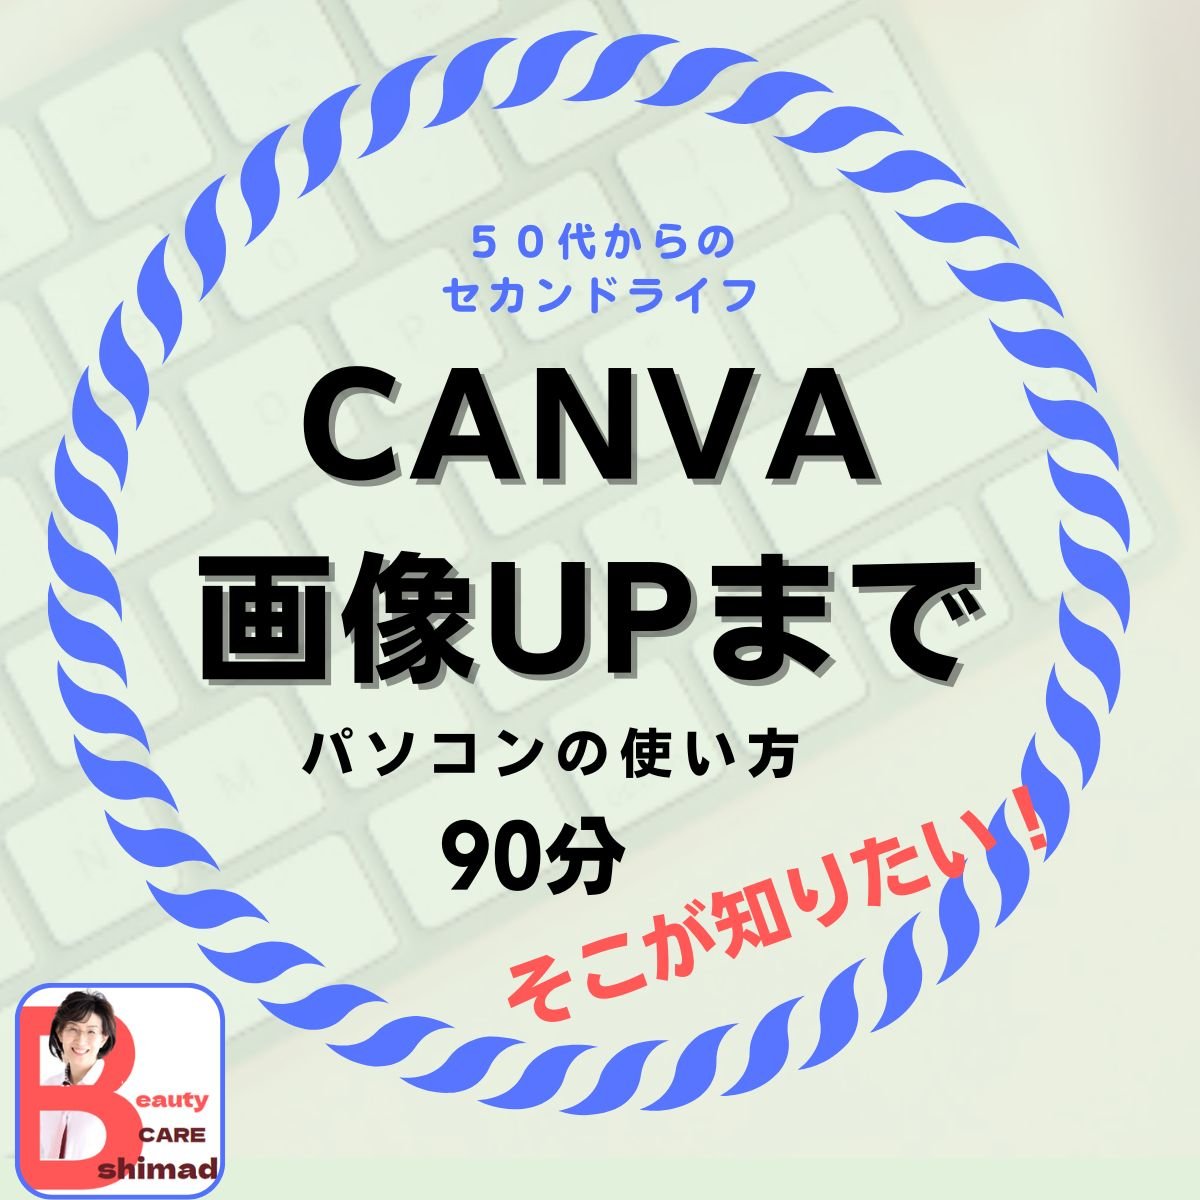 Canva（キャンバ）基礎からアップまで教室